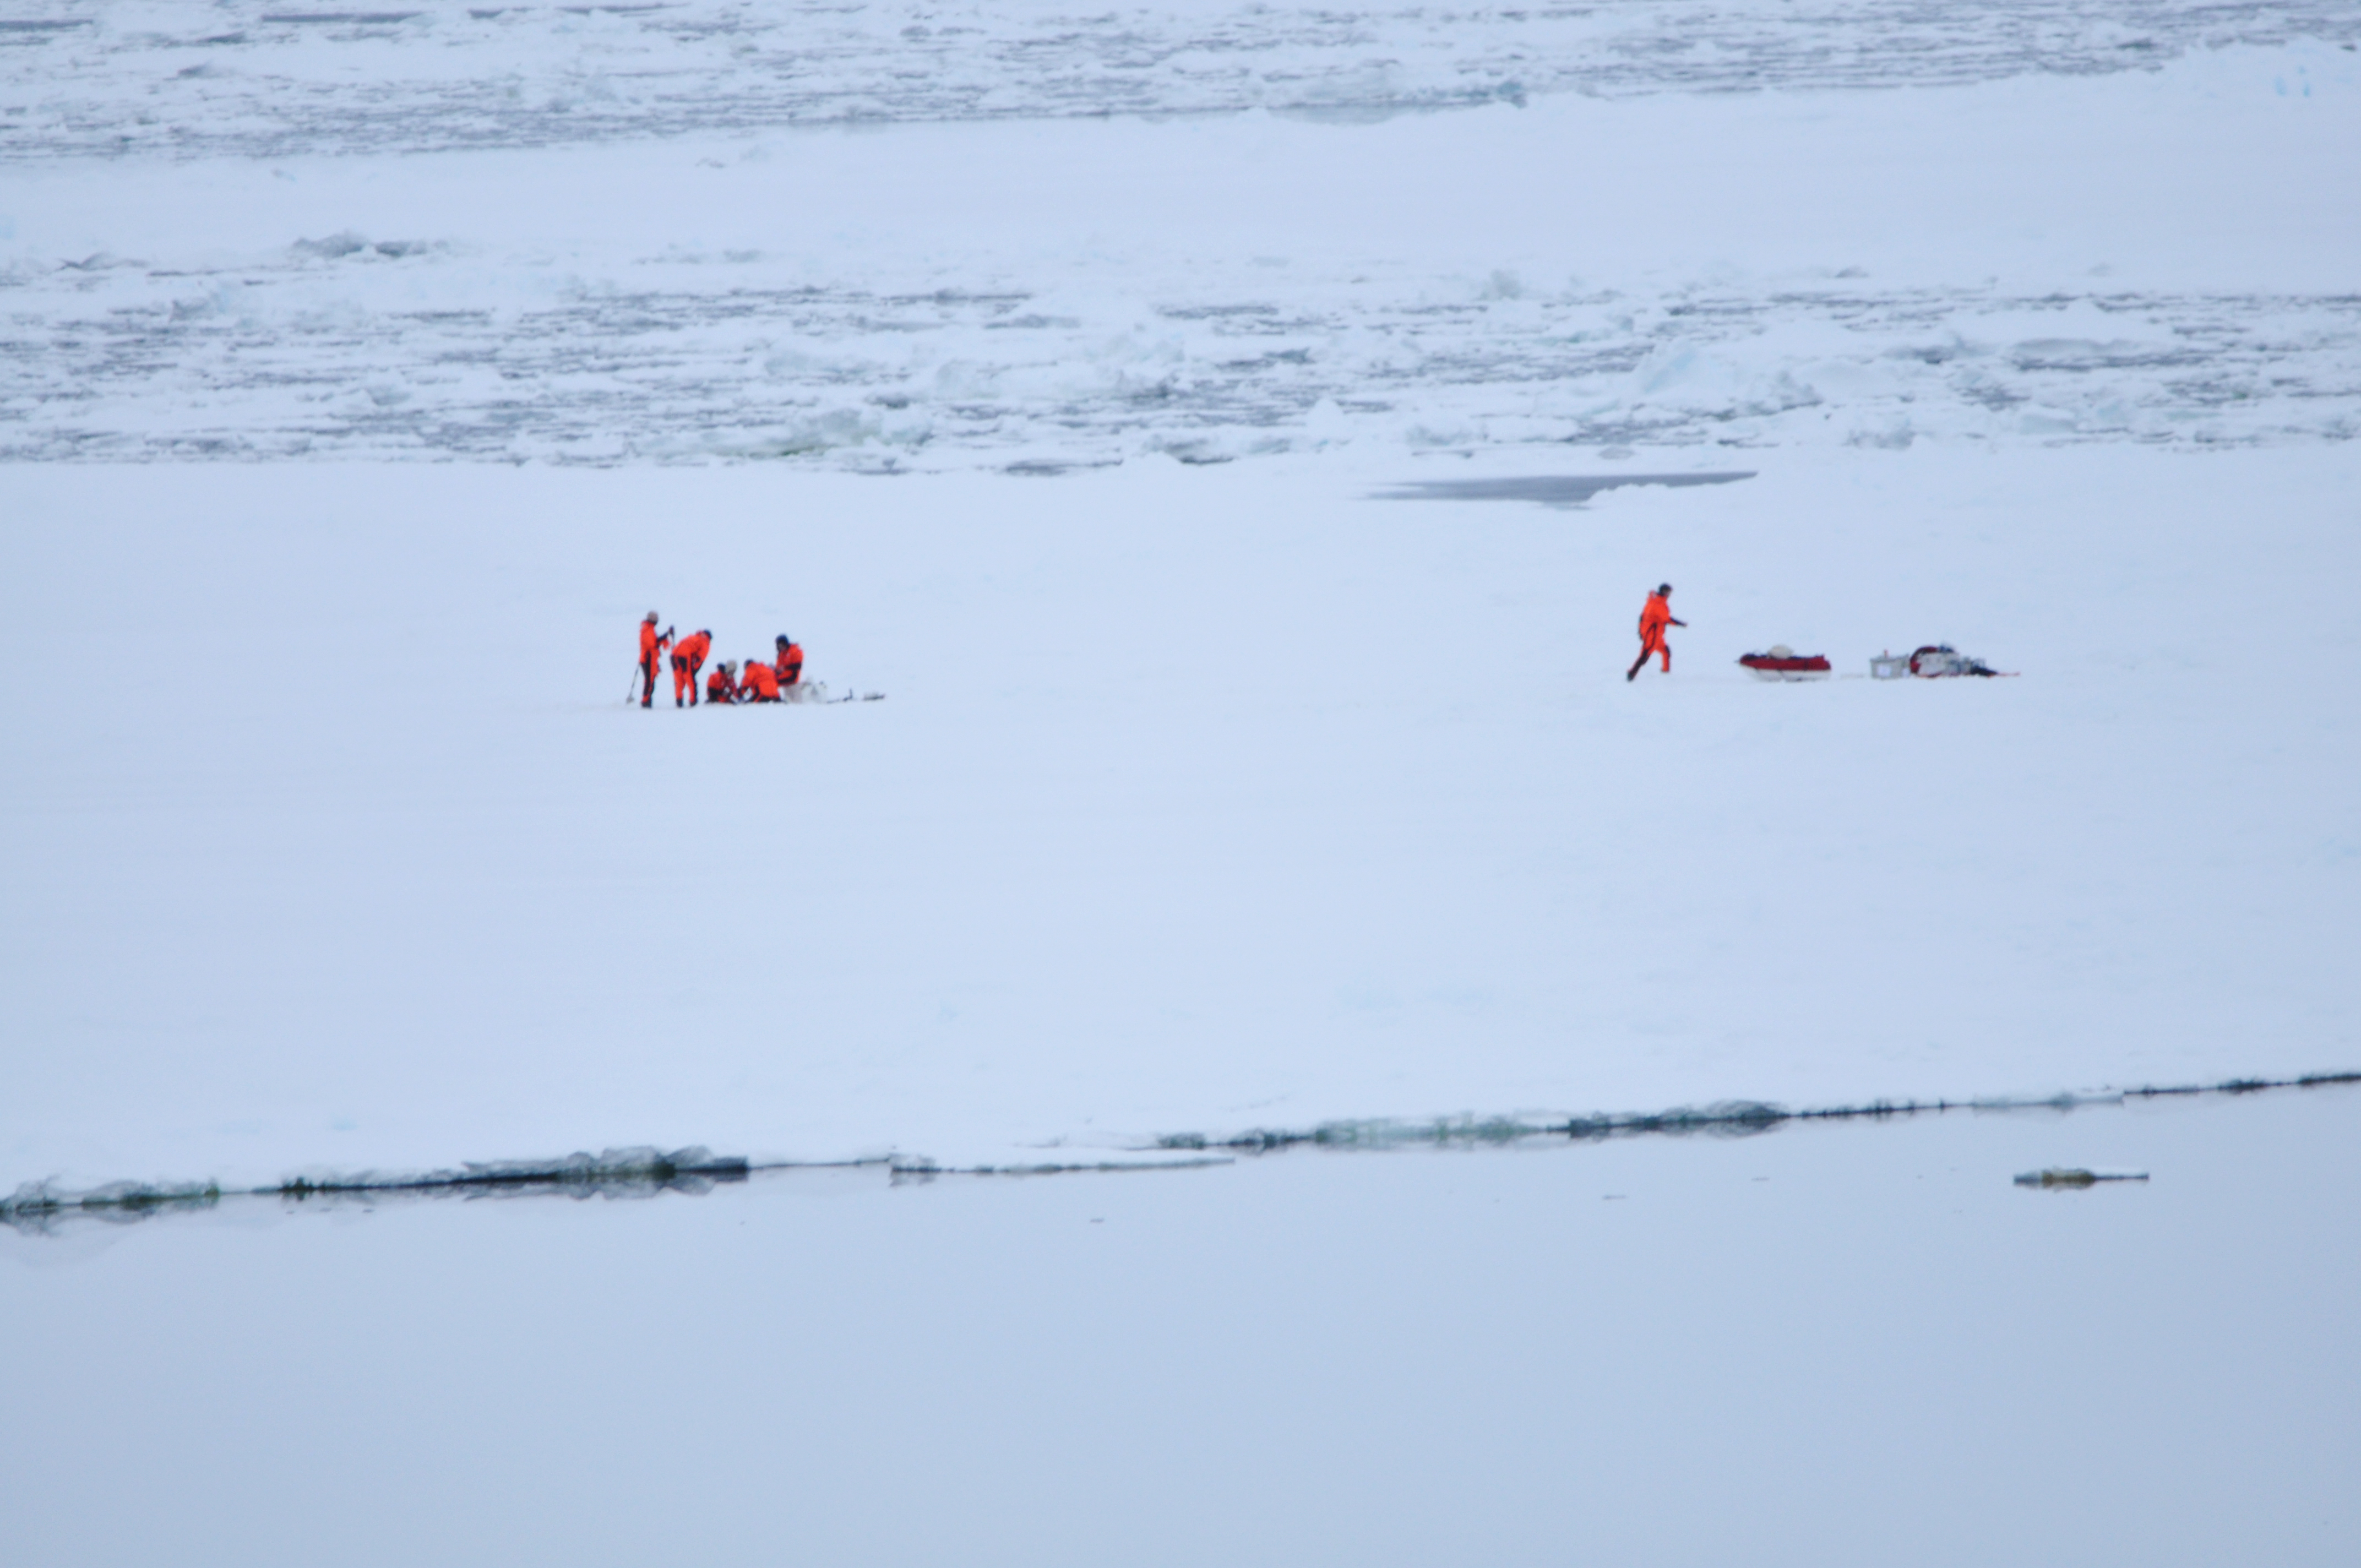 Auf einer weiten Eisebene steht eine Gruppe von Forschern und roten Kälteschutzanzügen. Sie entnehmen an einer Stelle eine Eisprobe. Weiter rechts läuft eine weitere Person zur Ausrüstung. 